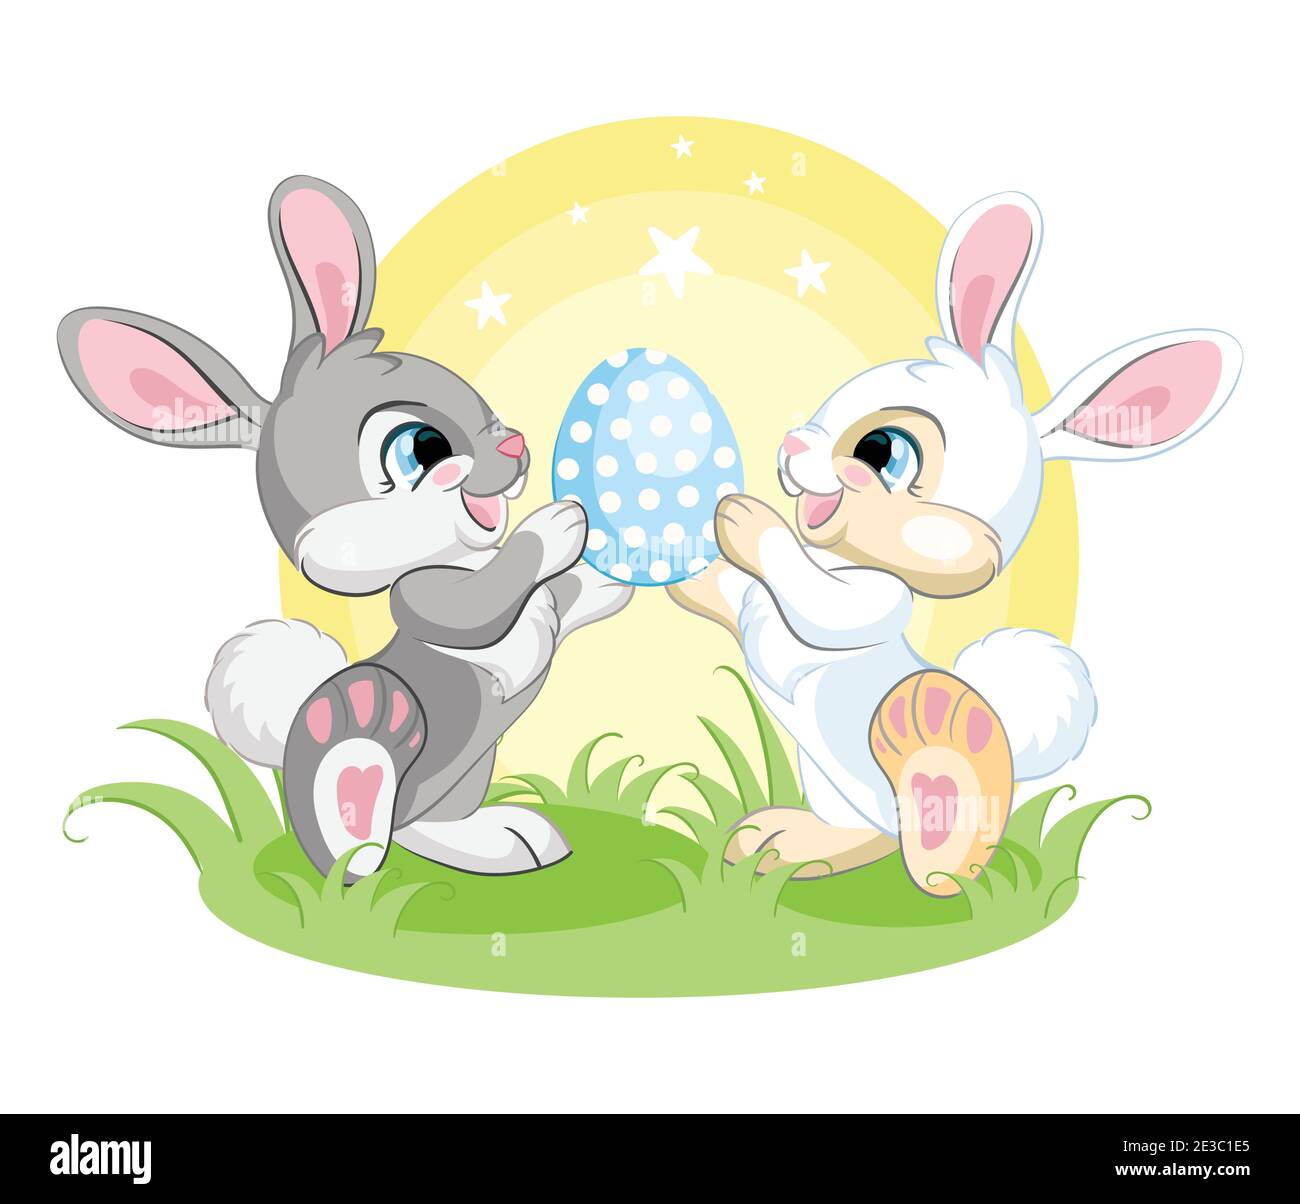 Simpatici coniglietti bianchi e grigi che guardano l'uovo di Pasqua. Illustrazione colorata isolata su sfondo bianco. Cartone animato carattere coniglio concetto di pasqua per Illustrazione Vettoriale